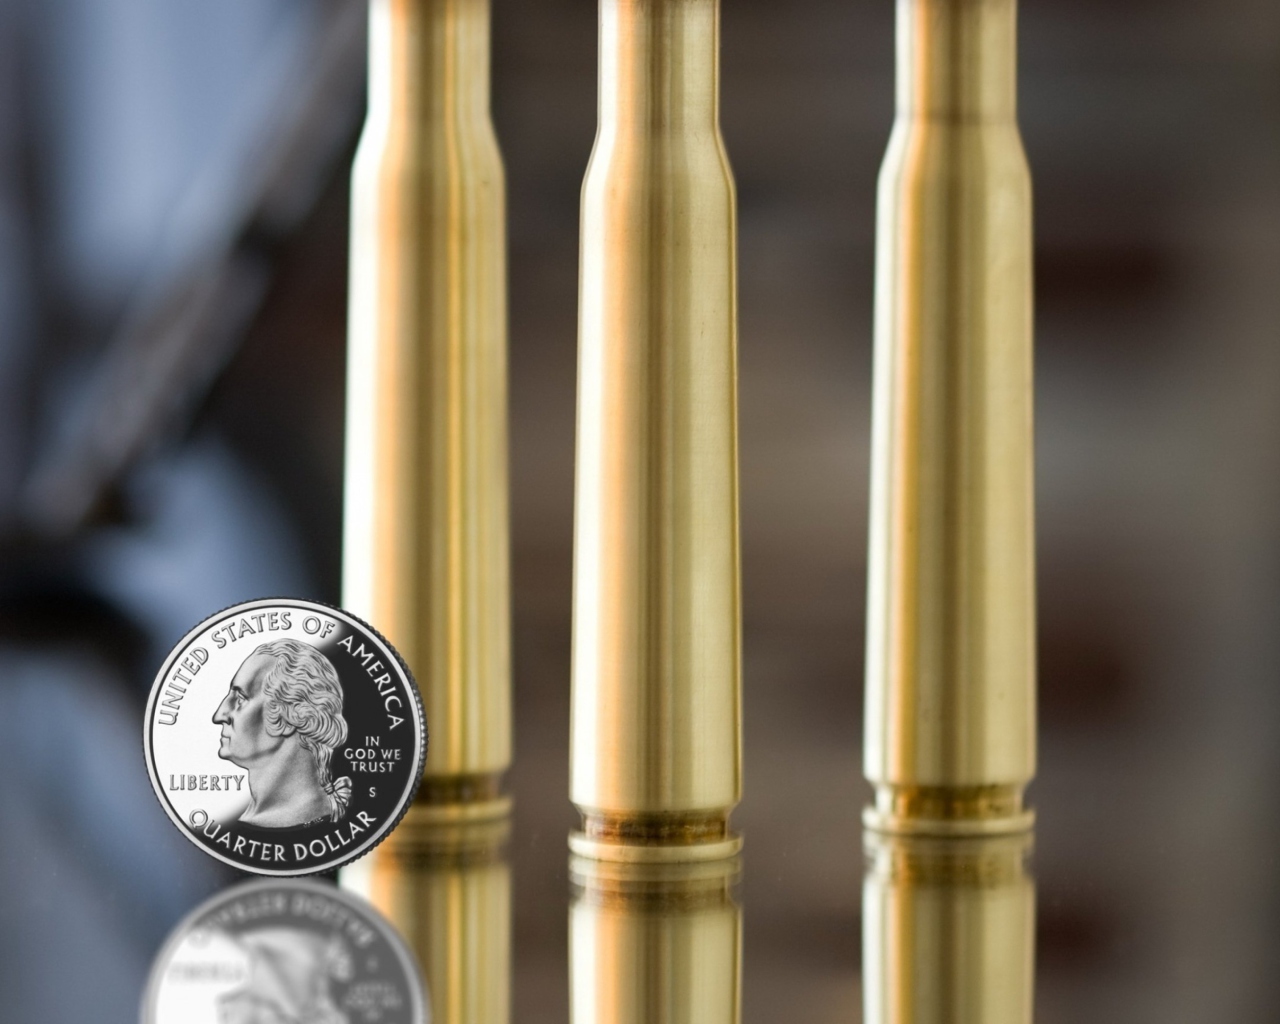 Fondo de pantalla Bullets And Quarter Dollar 1280x1024